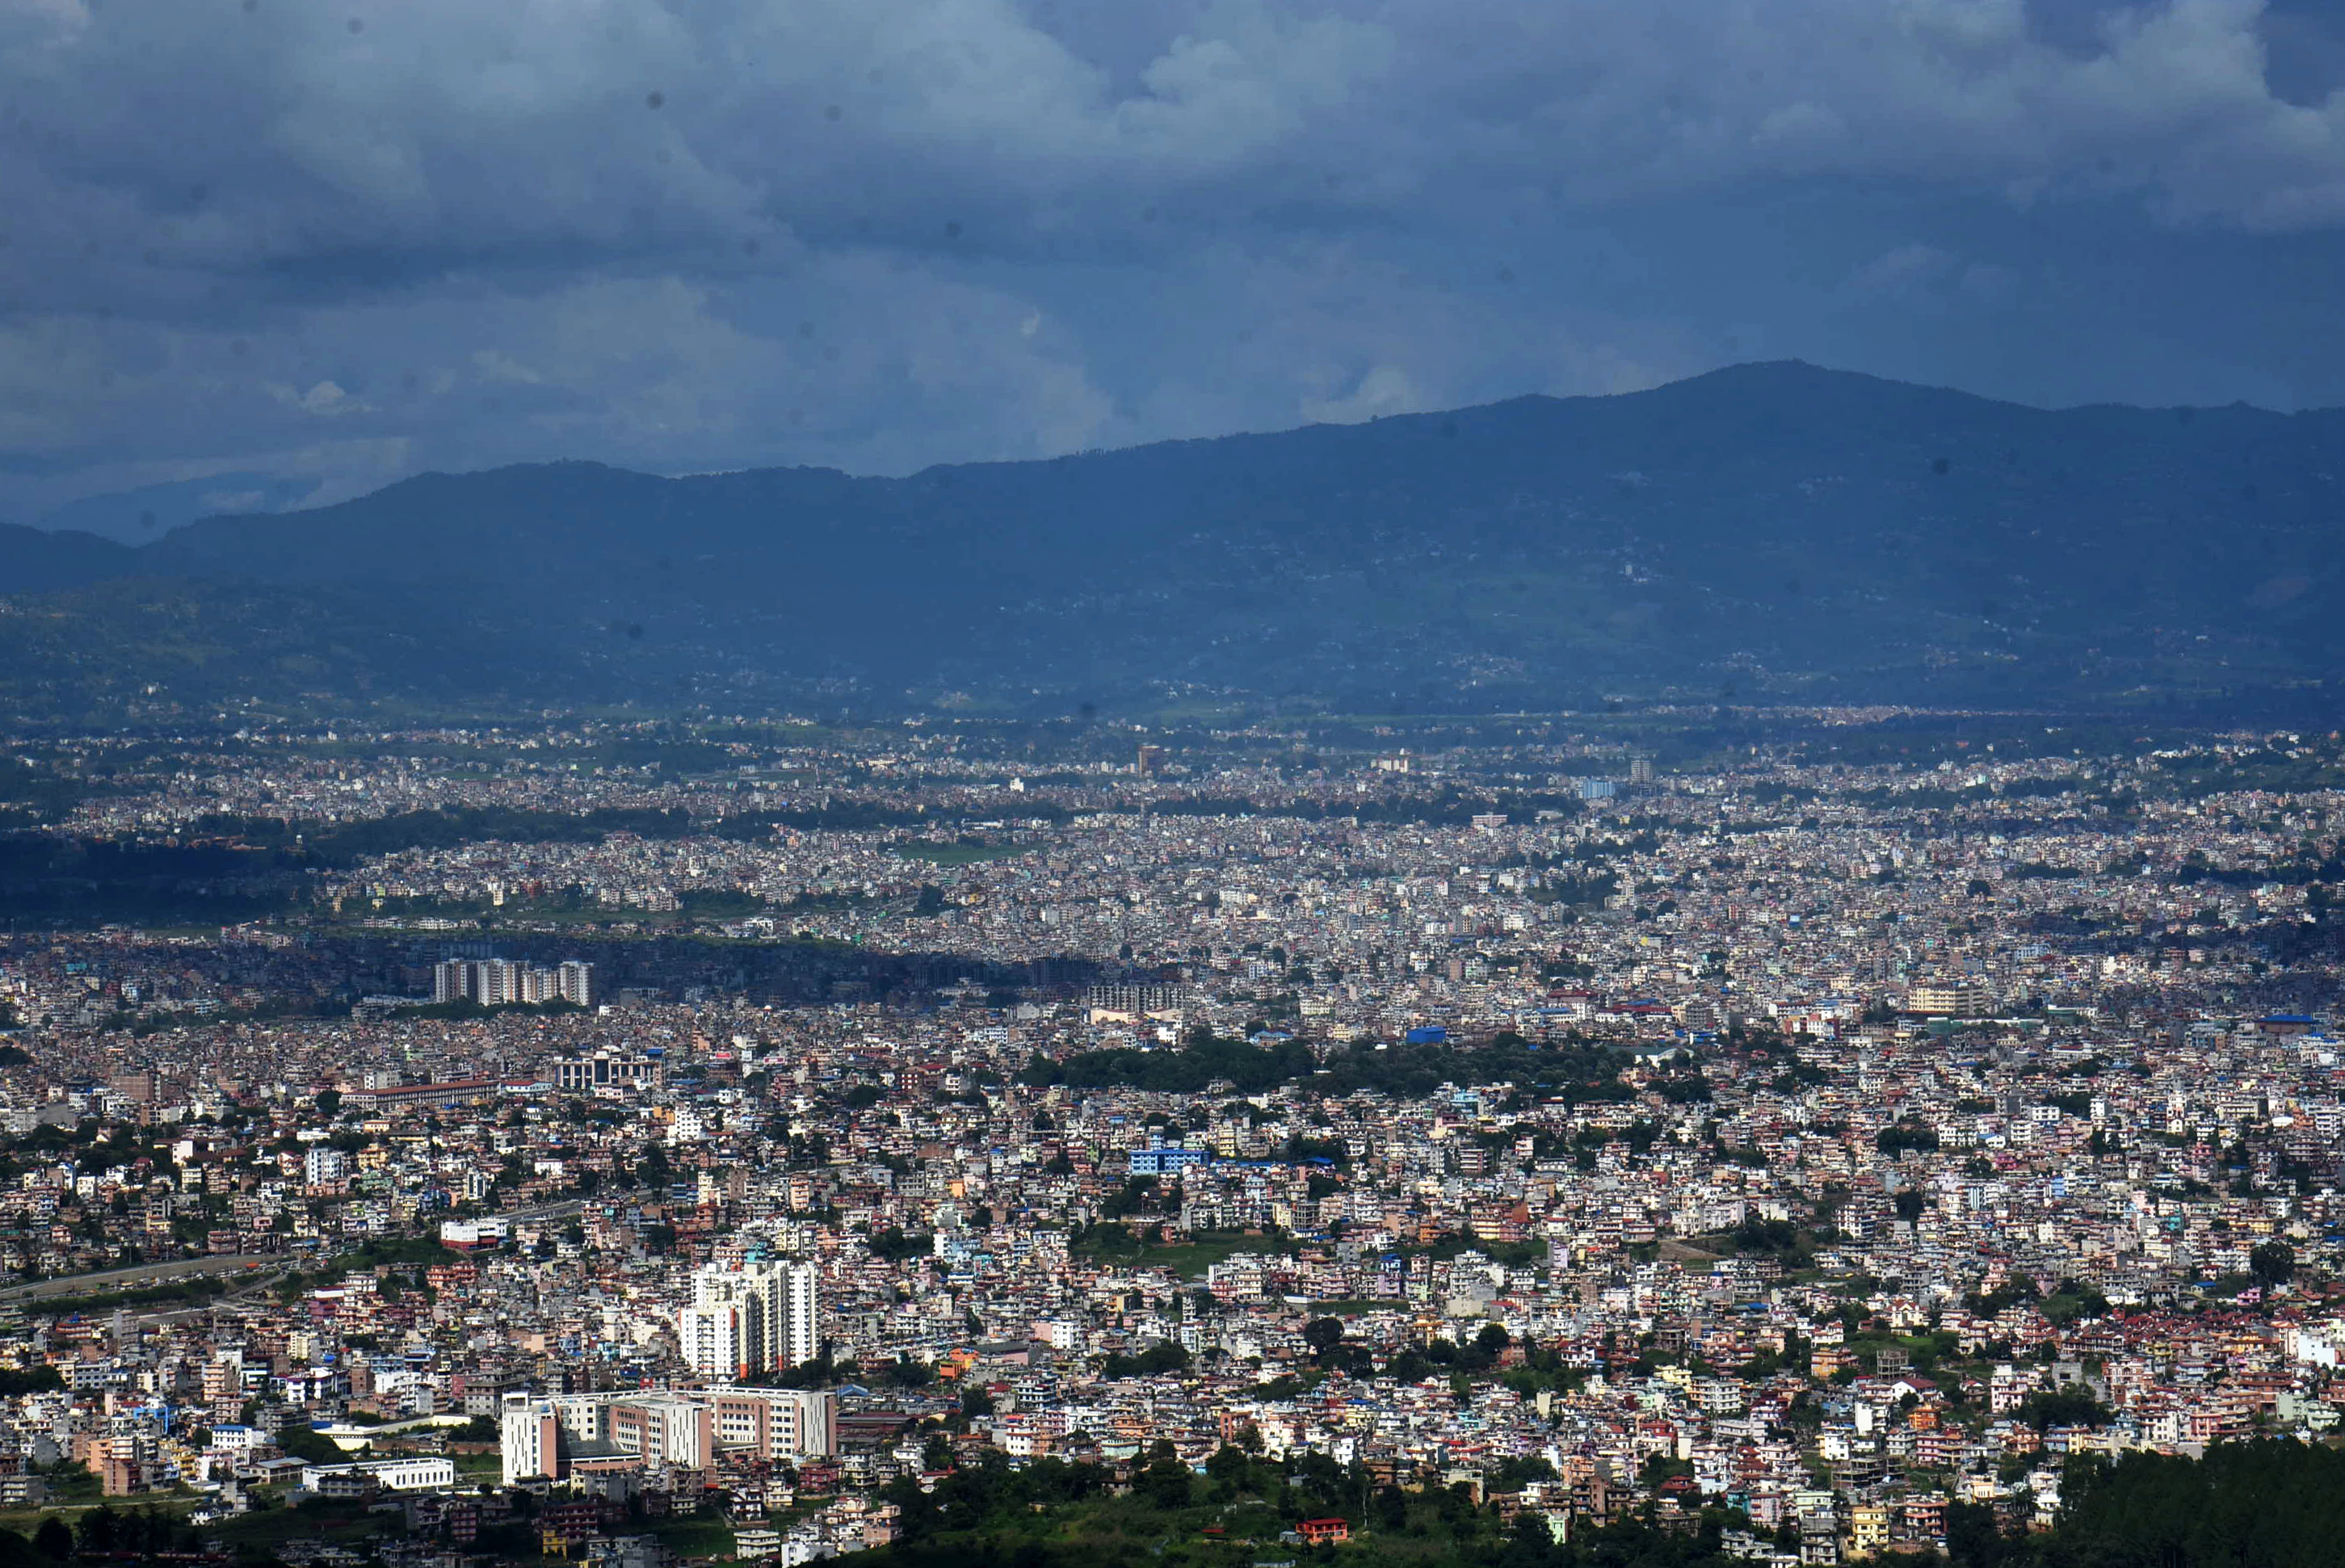 काठमाडौंको प्रदूषण अझै अस्वस्थ